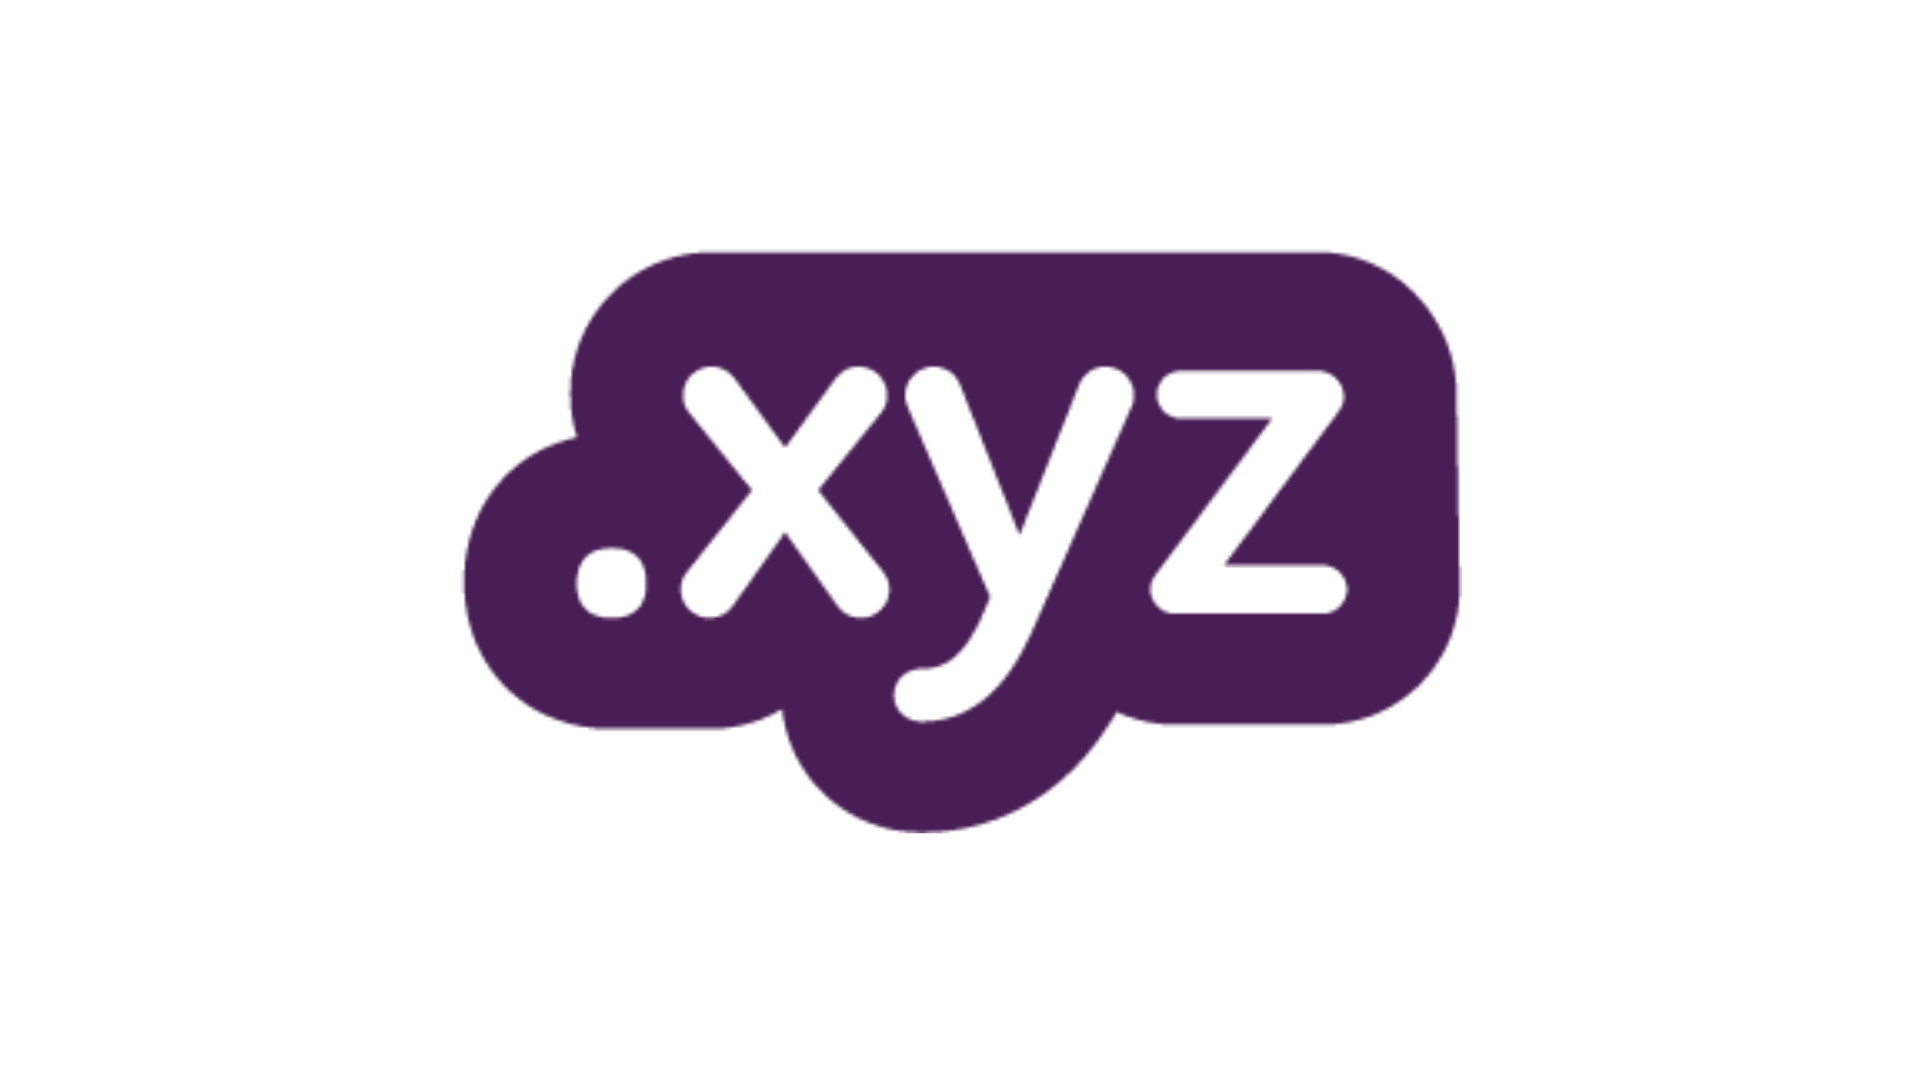 xyz.com